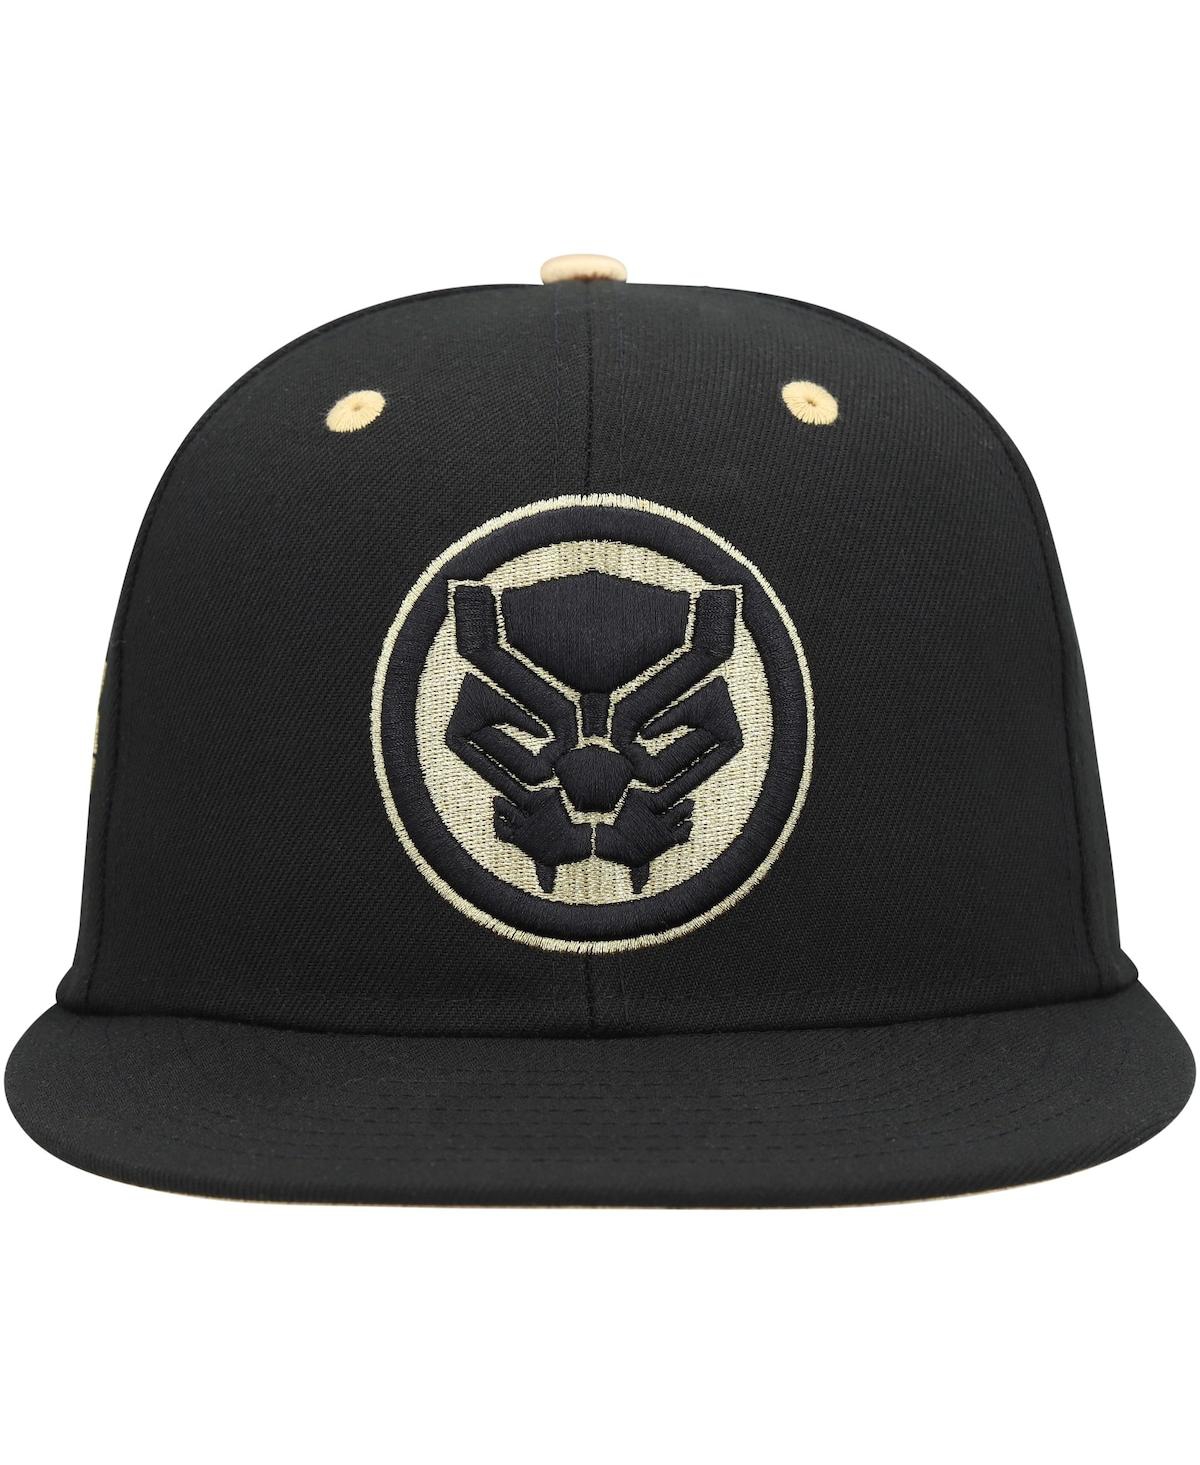 Shop Marvel Men's  Black Black Panther Fitted Hat